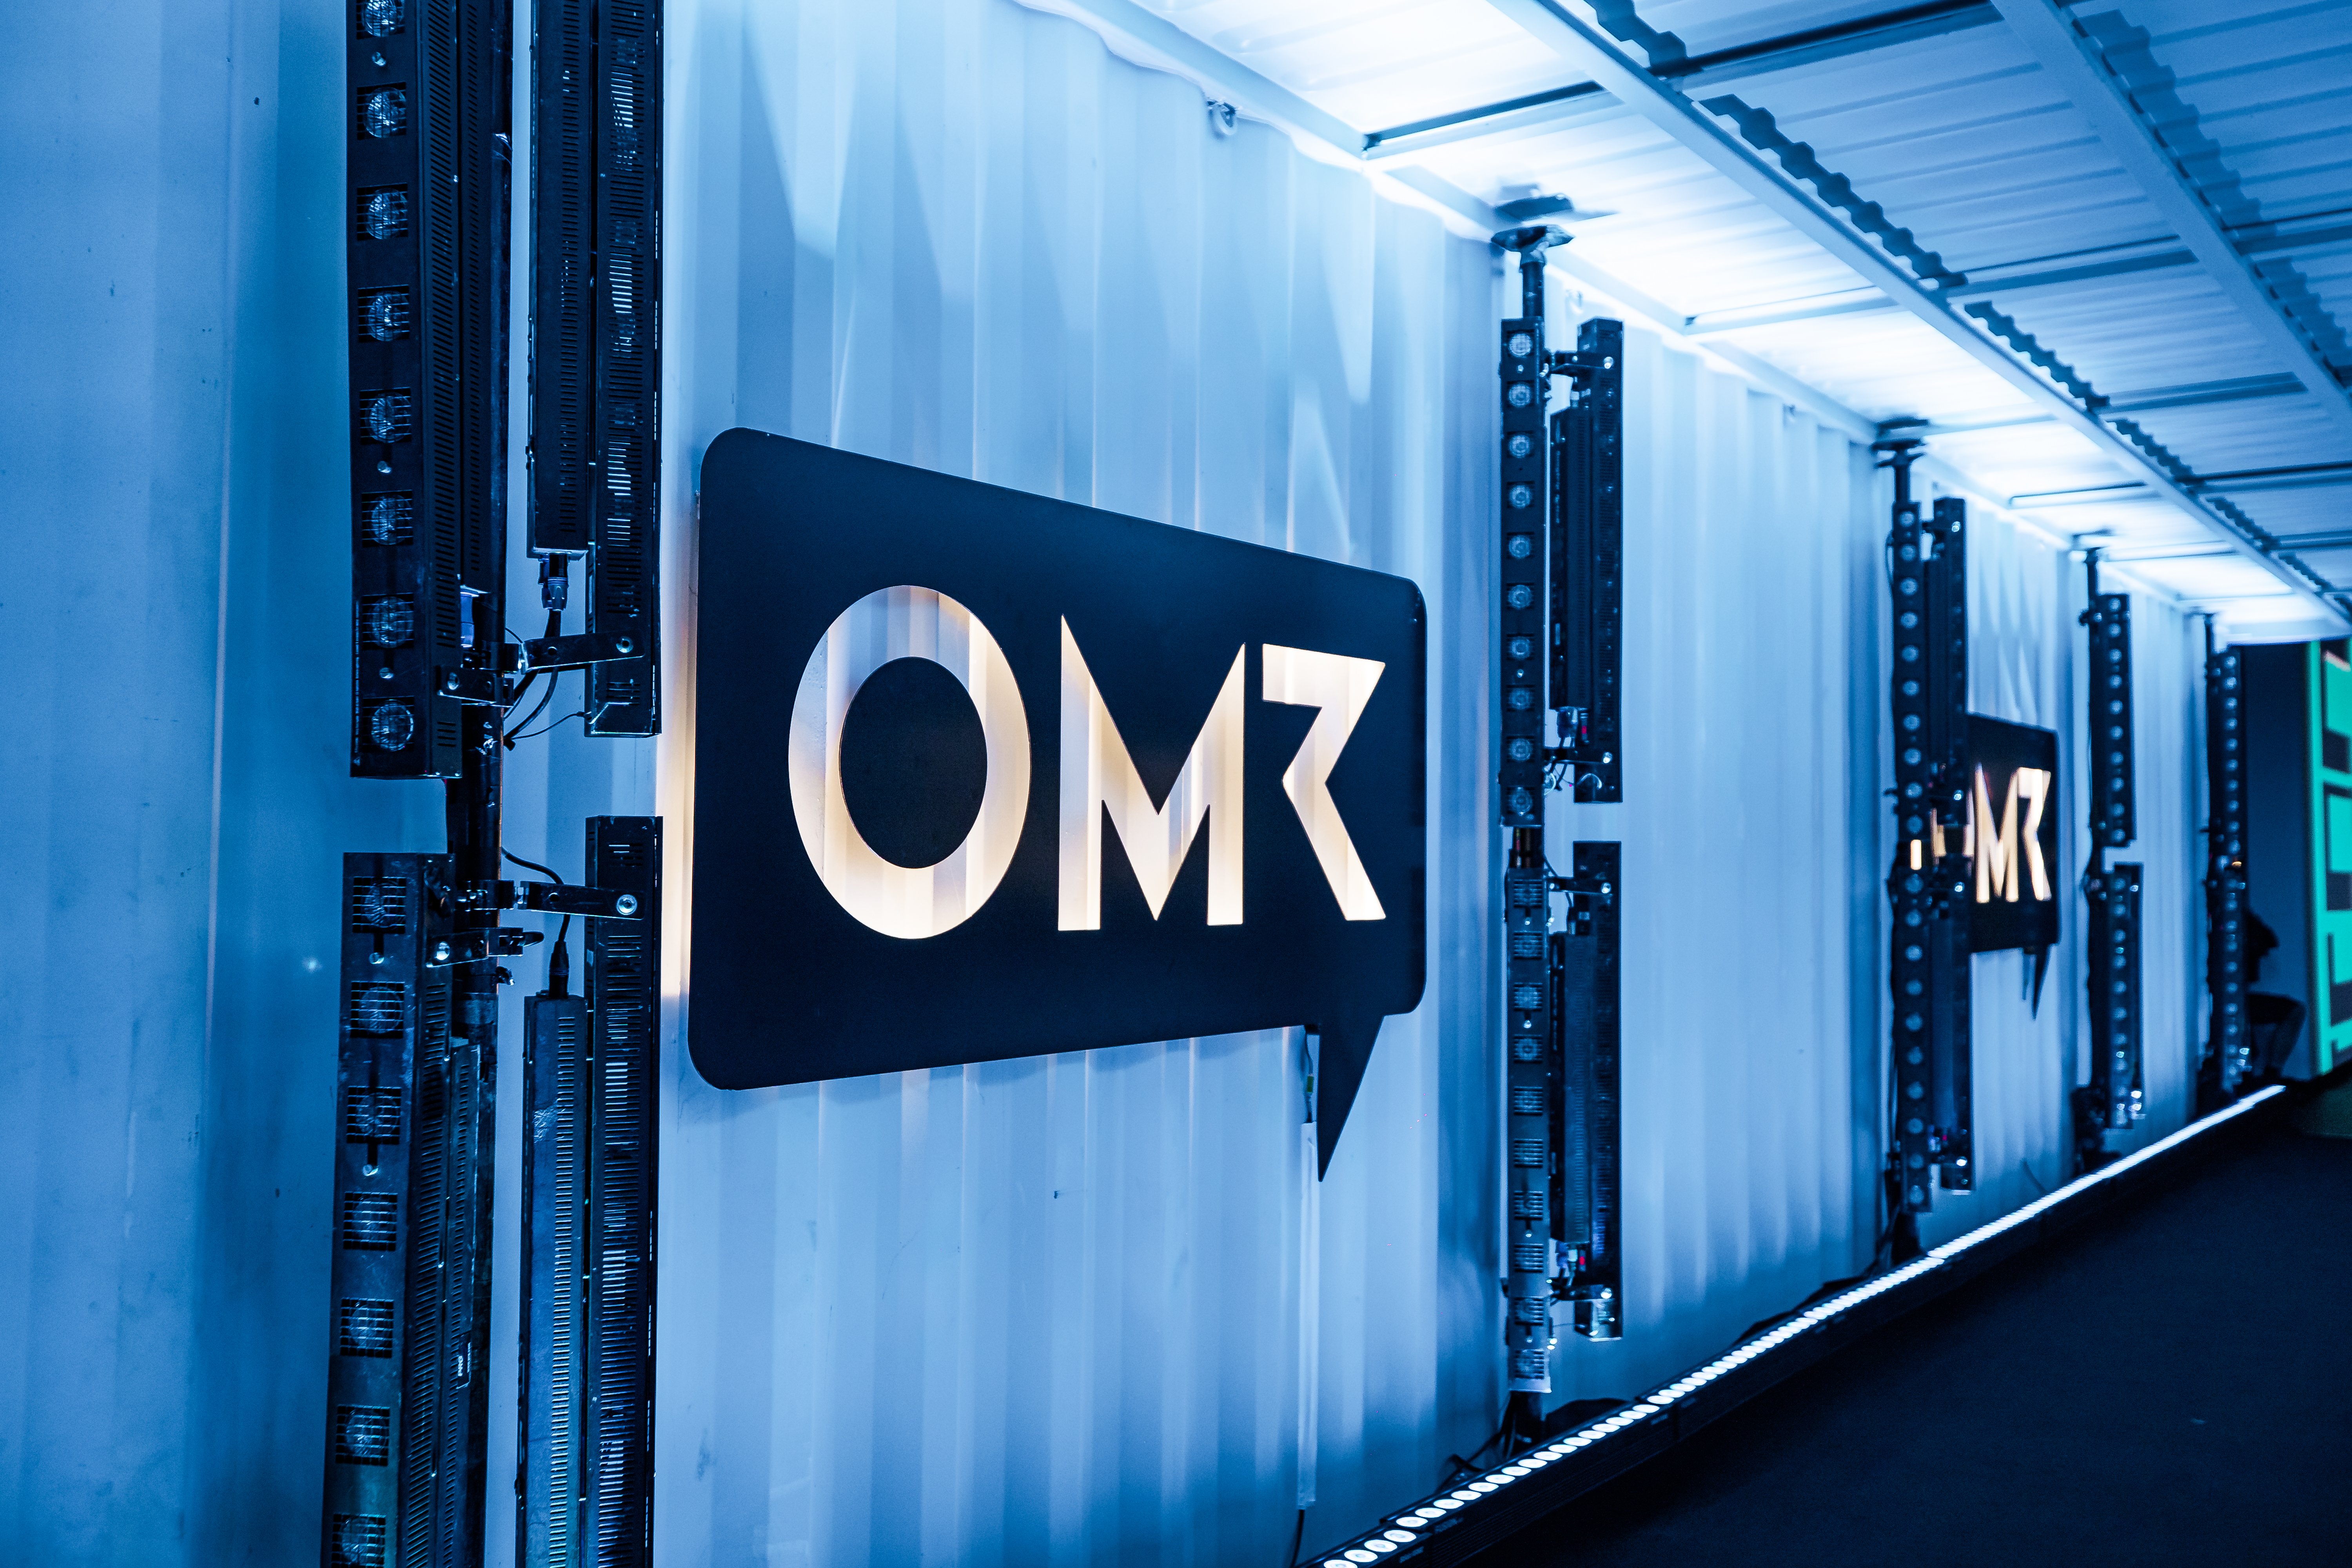 Bild vom OMR Logo in einem langen blau-beleuchteten Gang